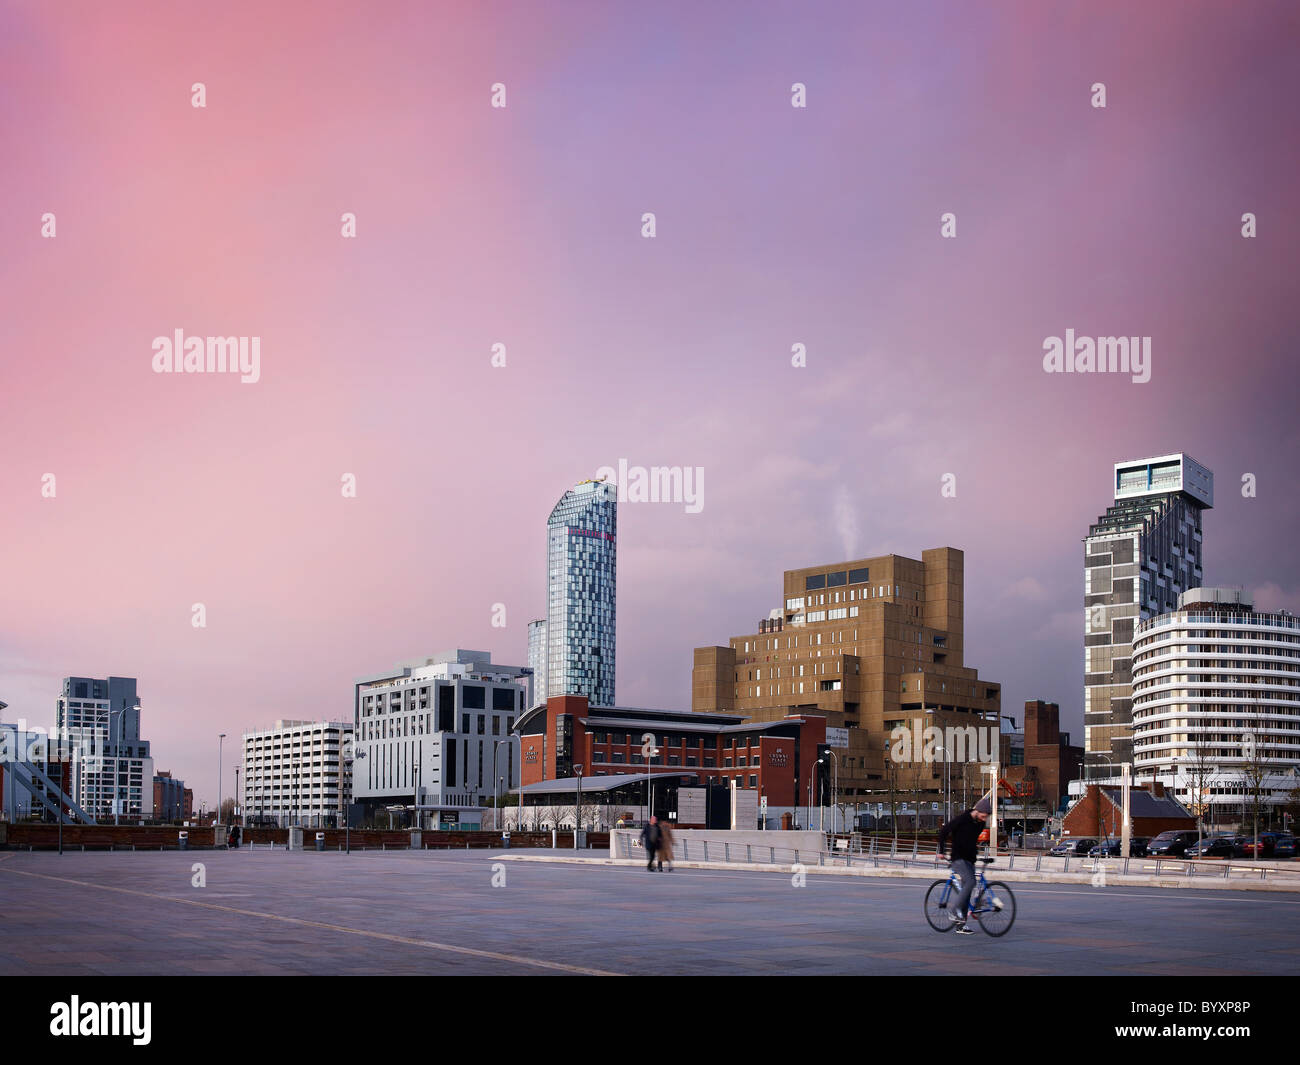 Immagine di liverpool skyline notturno utilizzando una lunga esposizione, che mostra gli edifici alti e paesaggio urbano da Pier Head Foto Stock